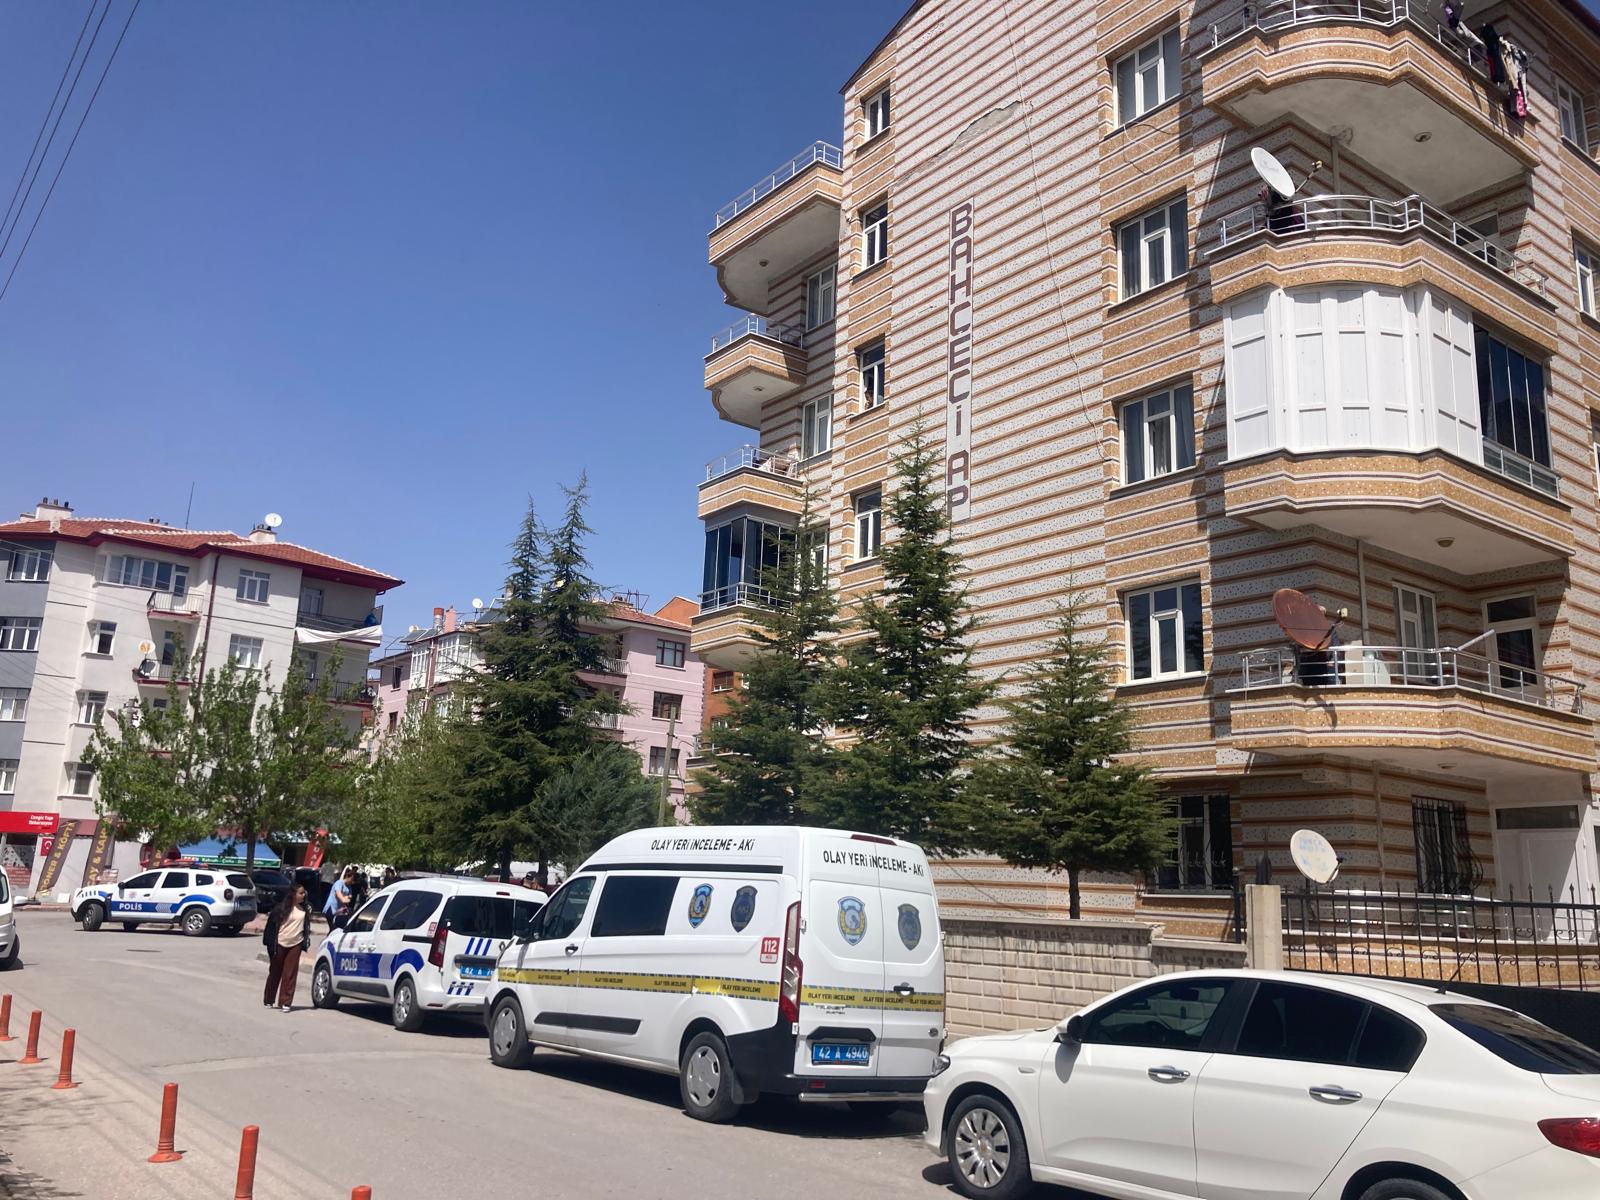 Konya’da dehşet! Kadın evde kanlar içinde bulundu